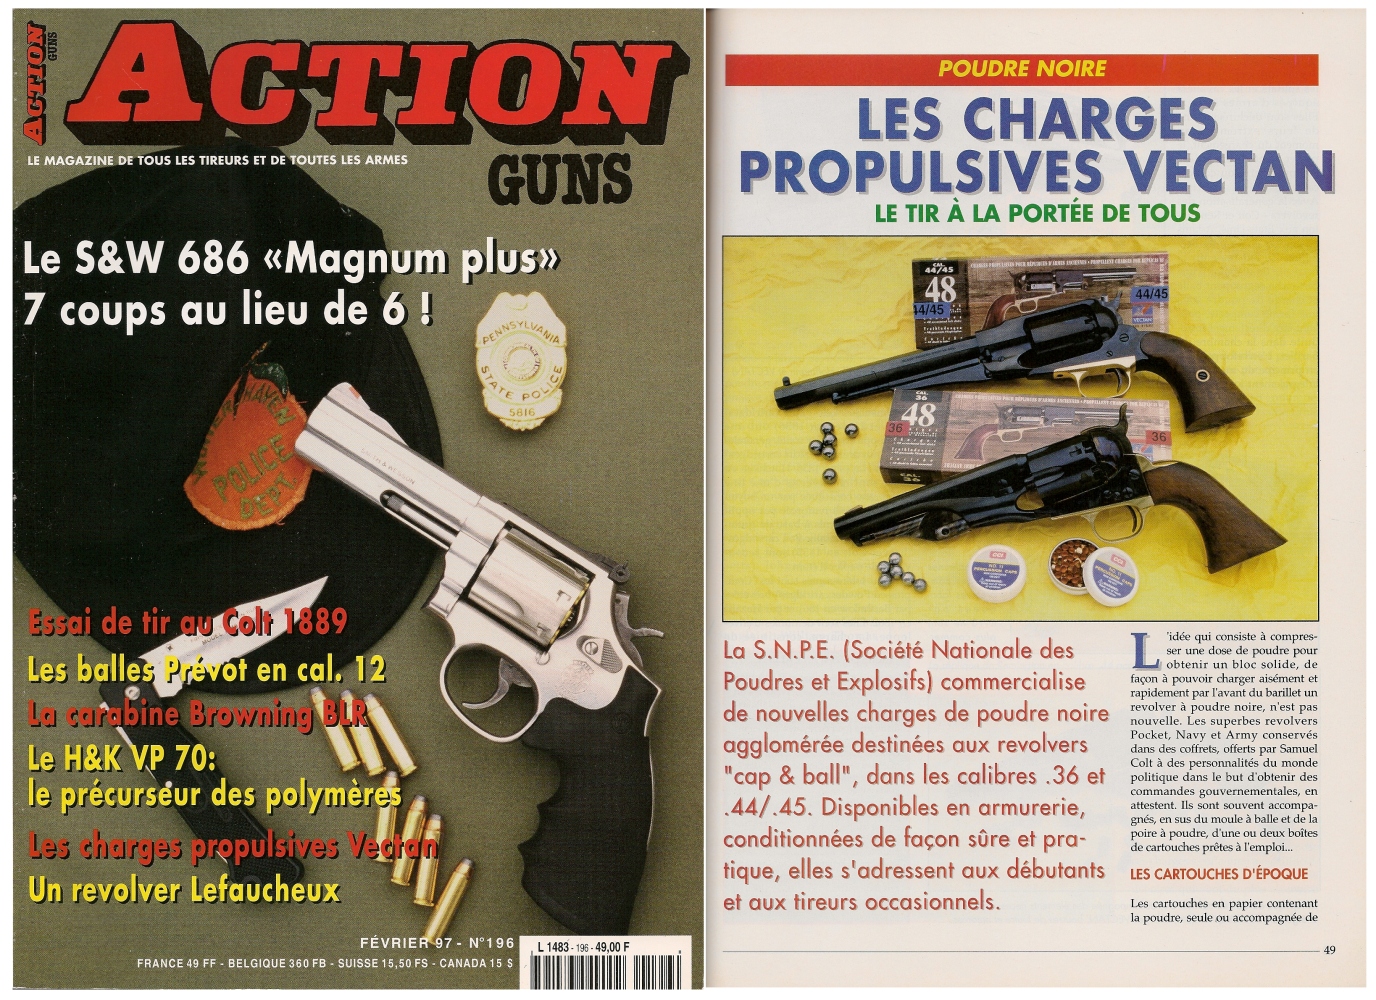 Le banc d'essai des charges propulsives Vectan en calibre .36 et .44 a été publié sur 5 pages dans le magazine Action Guns n° 196 (février 1997). 